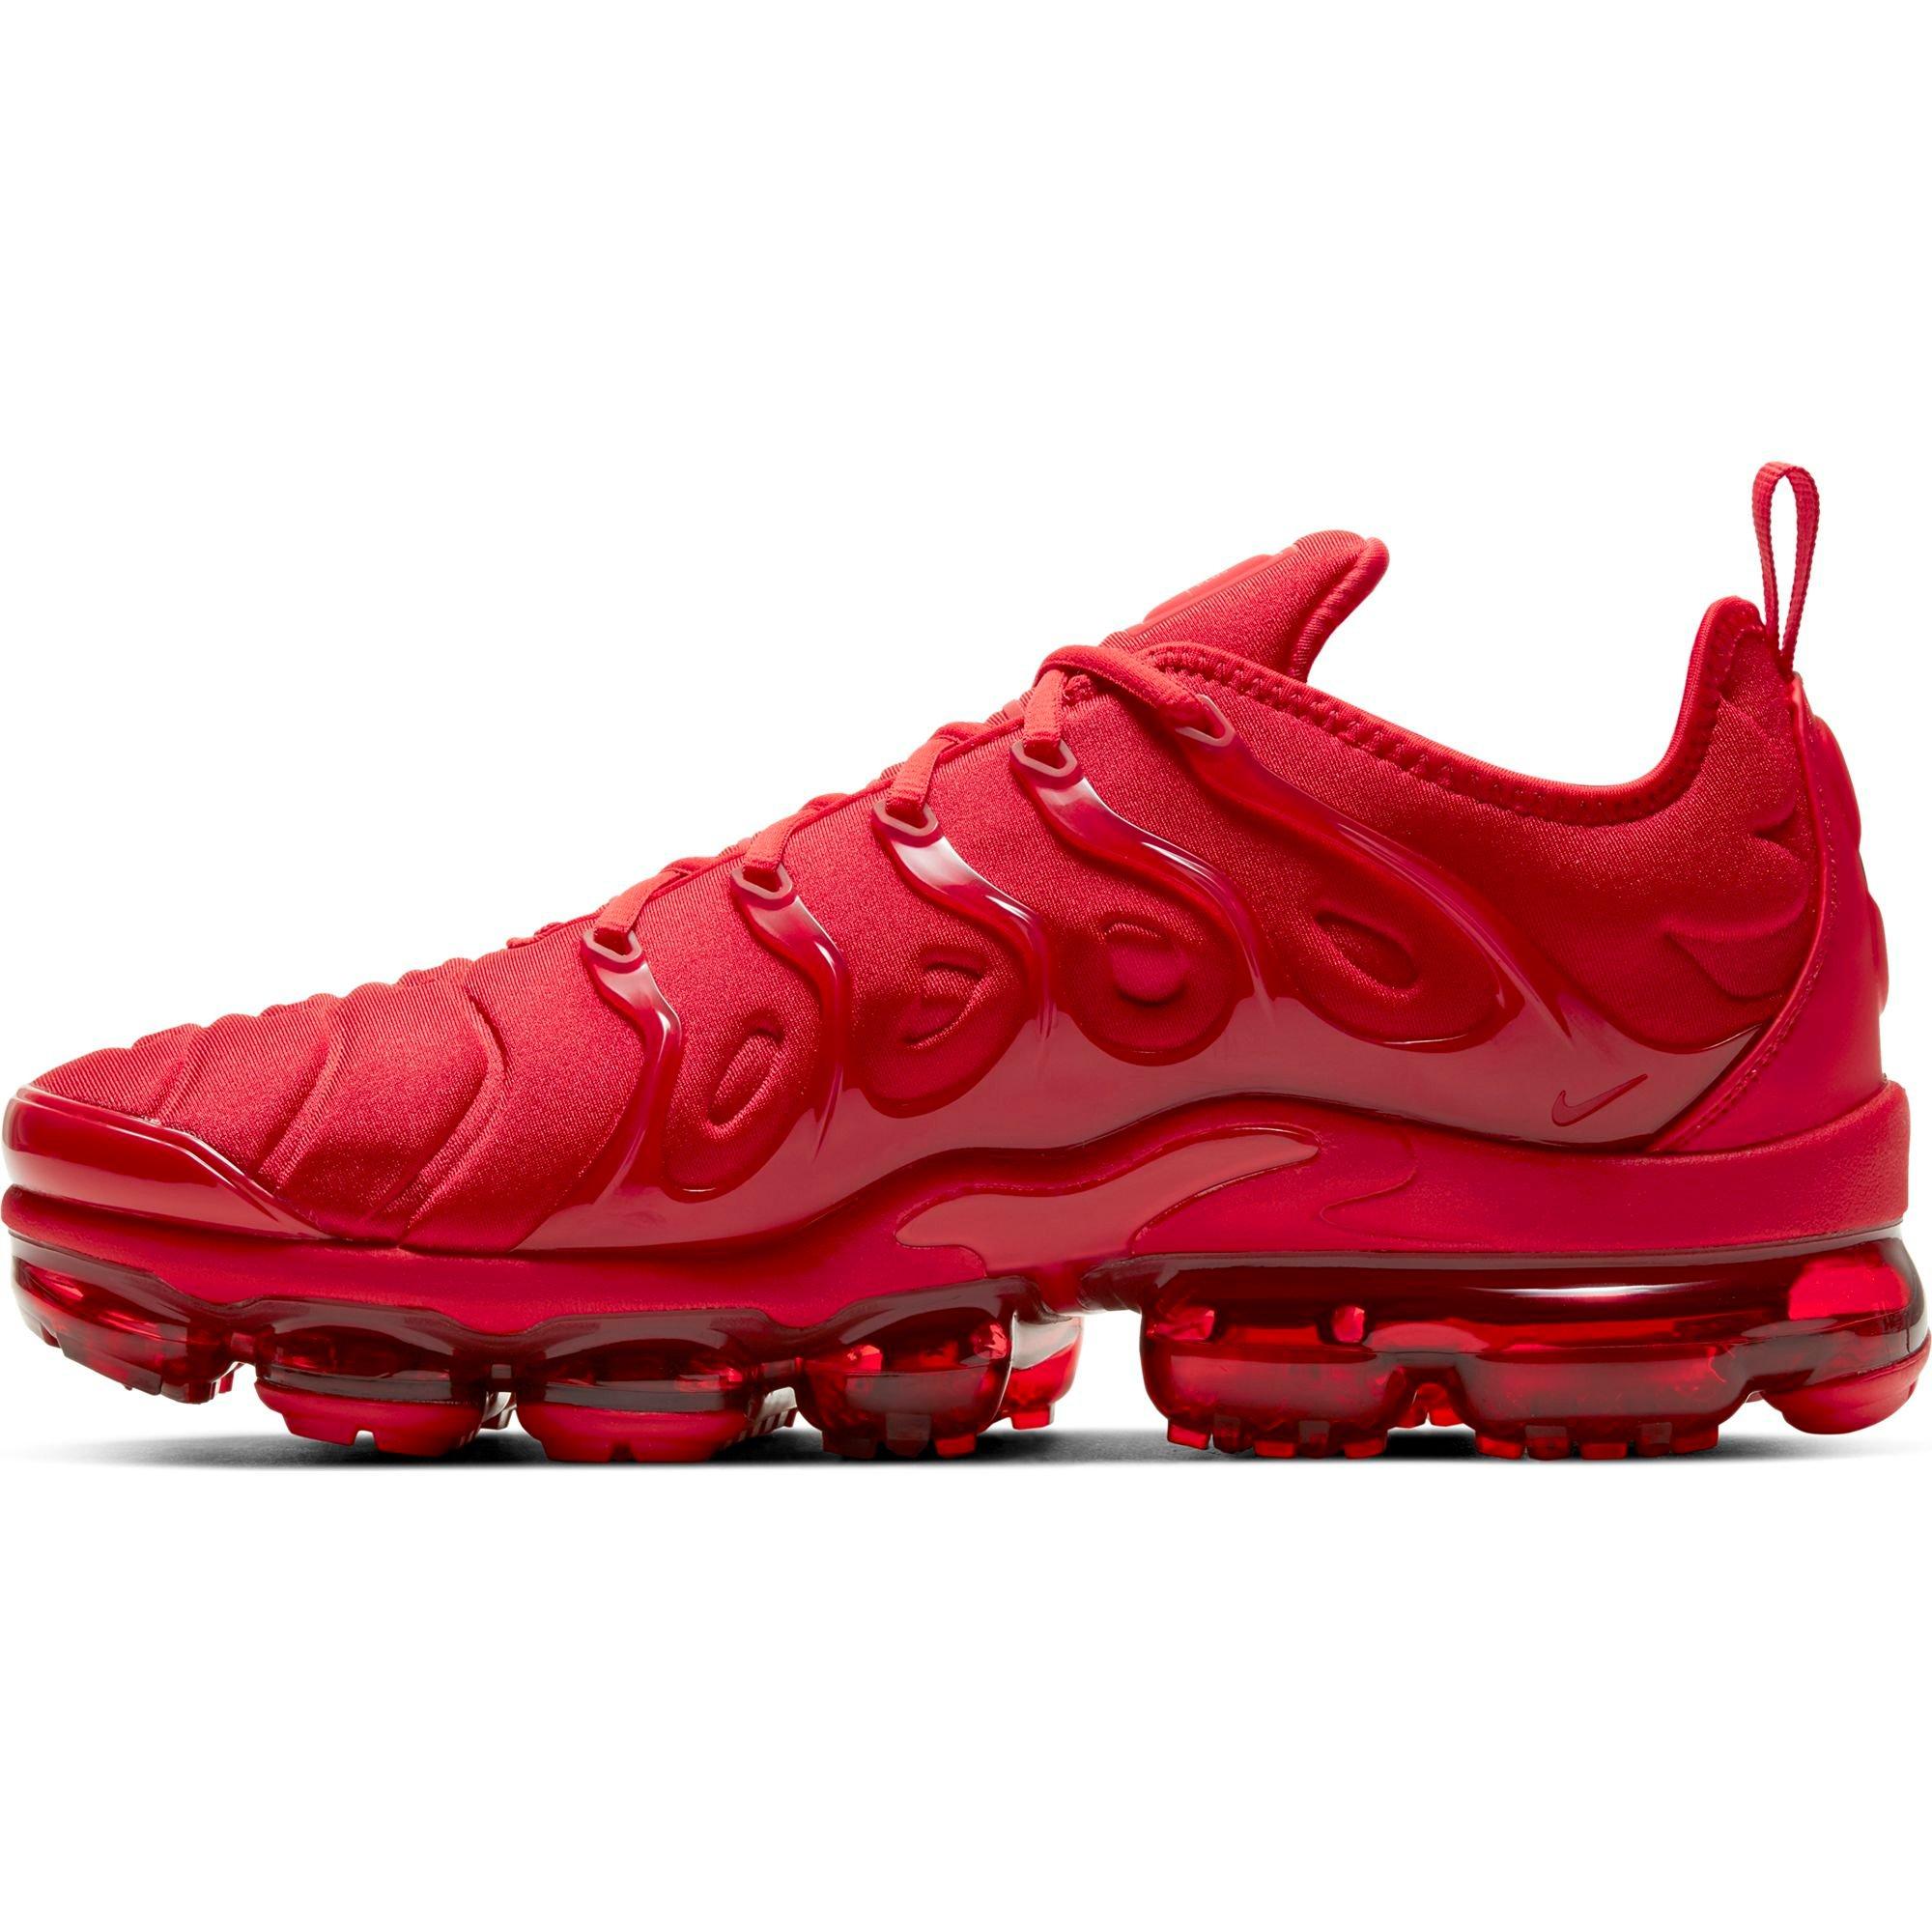 Nike VaporMax "Red" Men's Shoe